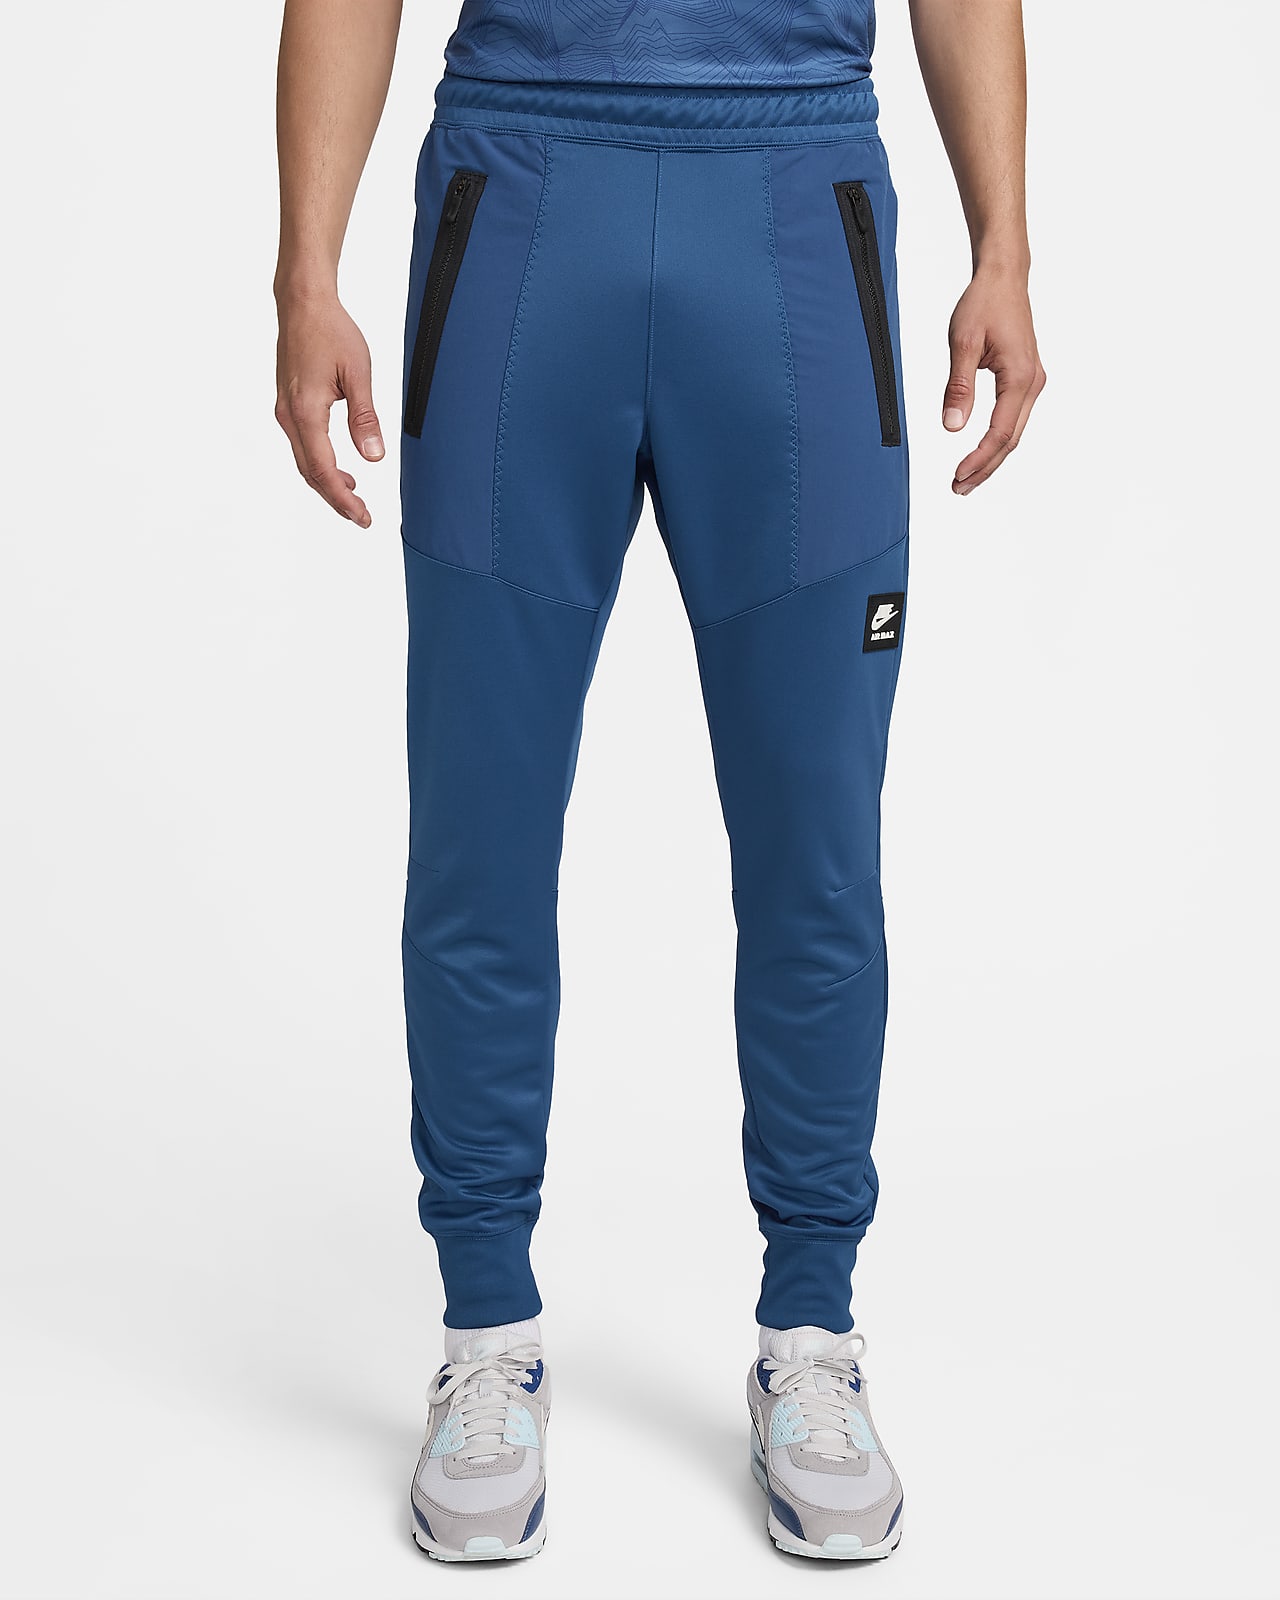 Pantalon de jogging Nike Air Max pour Homme